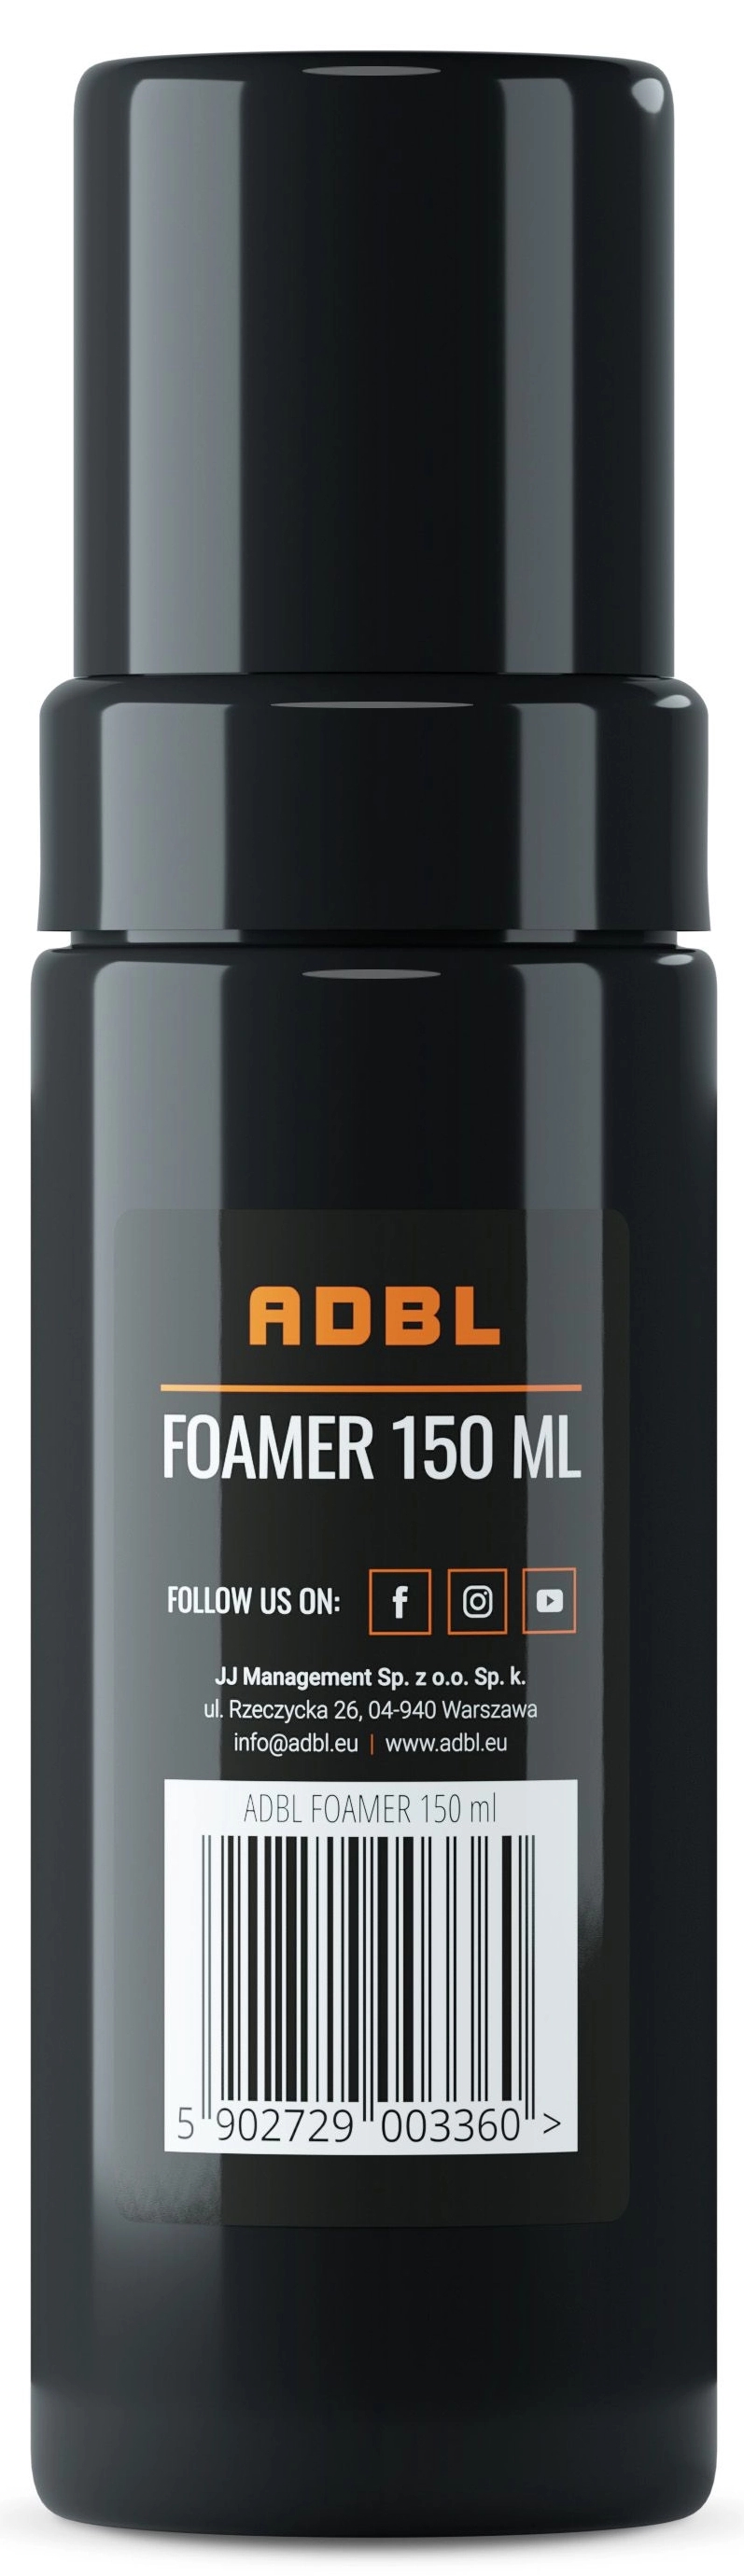 Image of adbl foamer – butelka z dyszą spieniającą 150ml